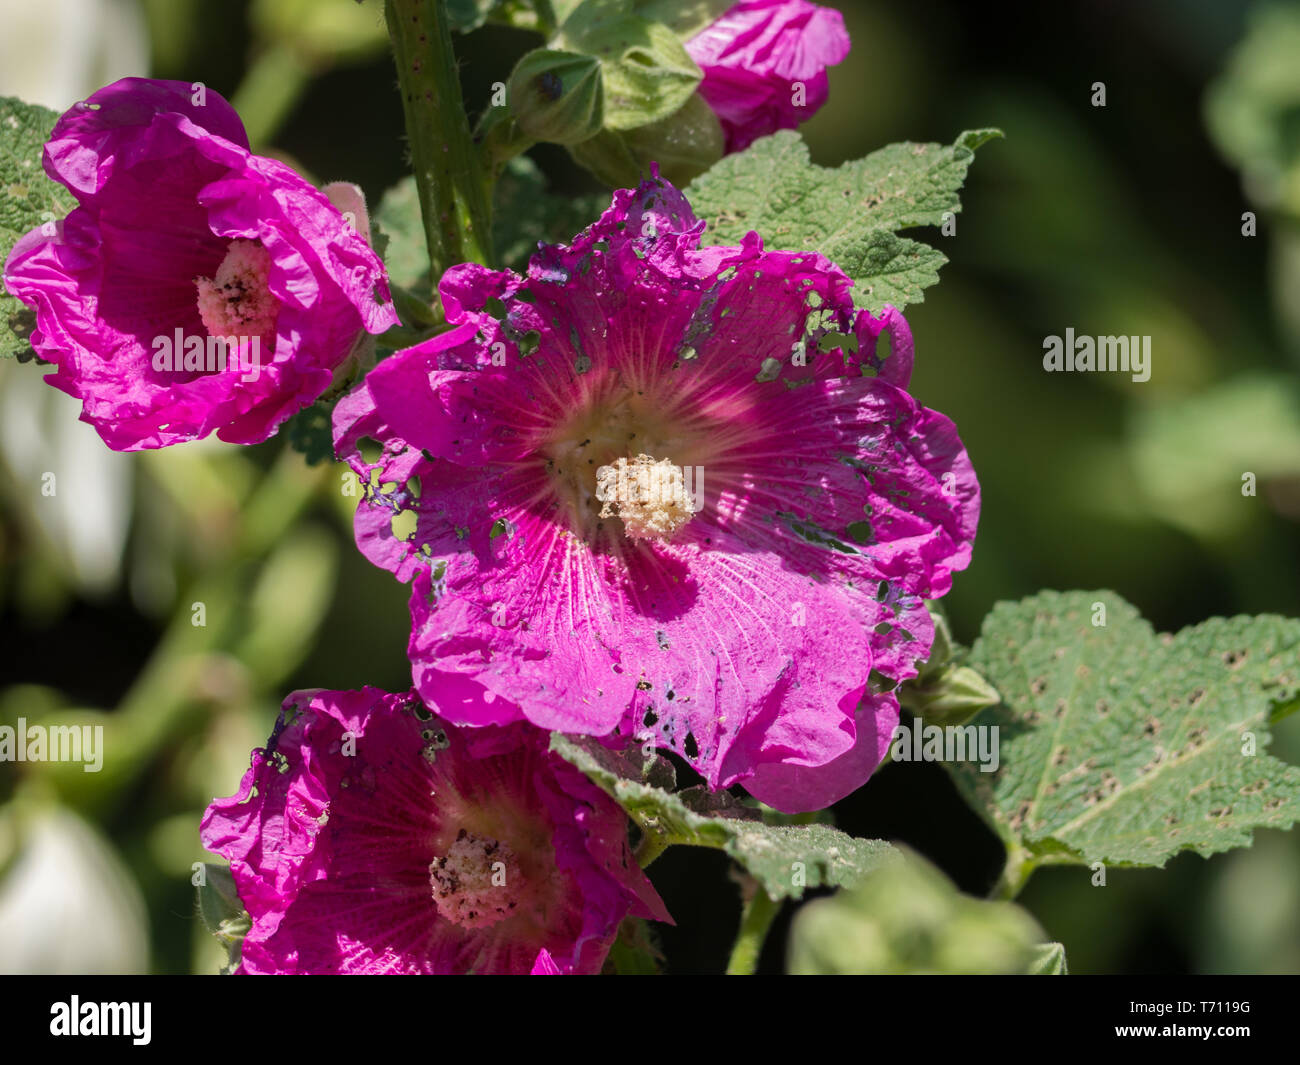 Pink Hollyhock garden plant in summer Stock Photo